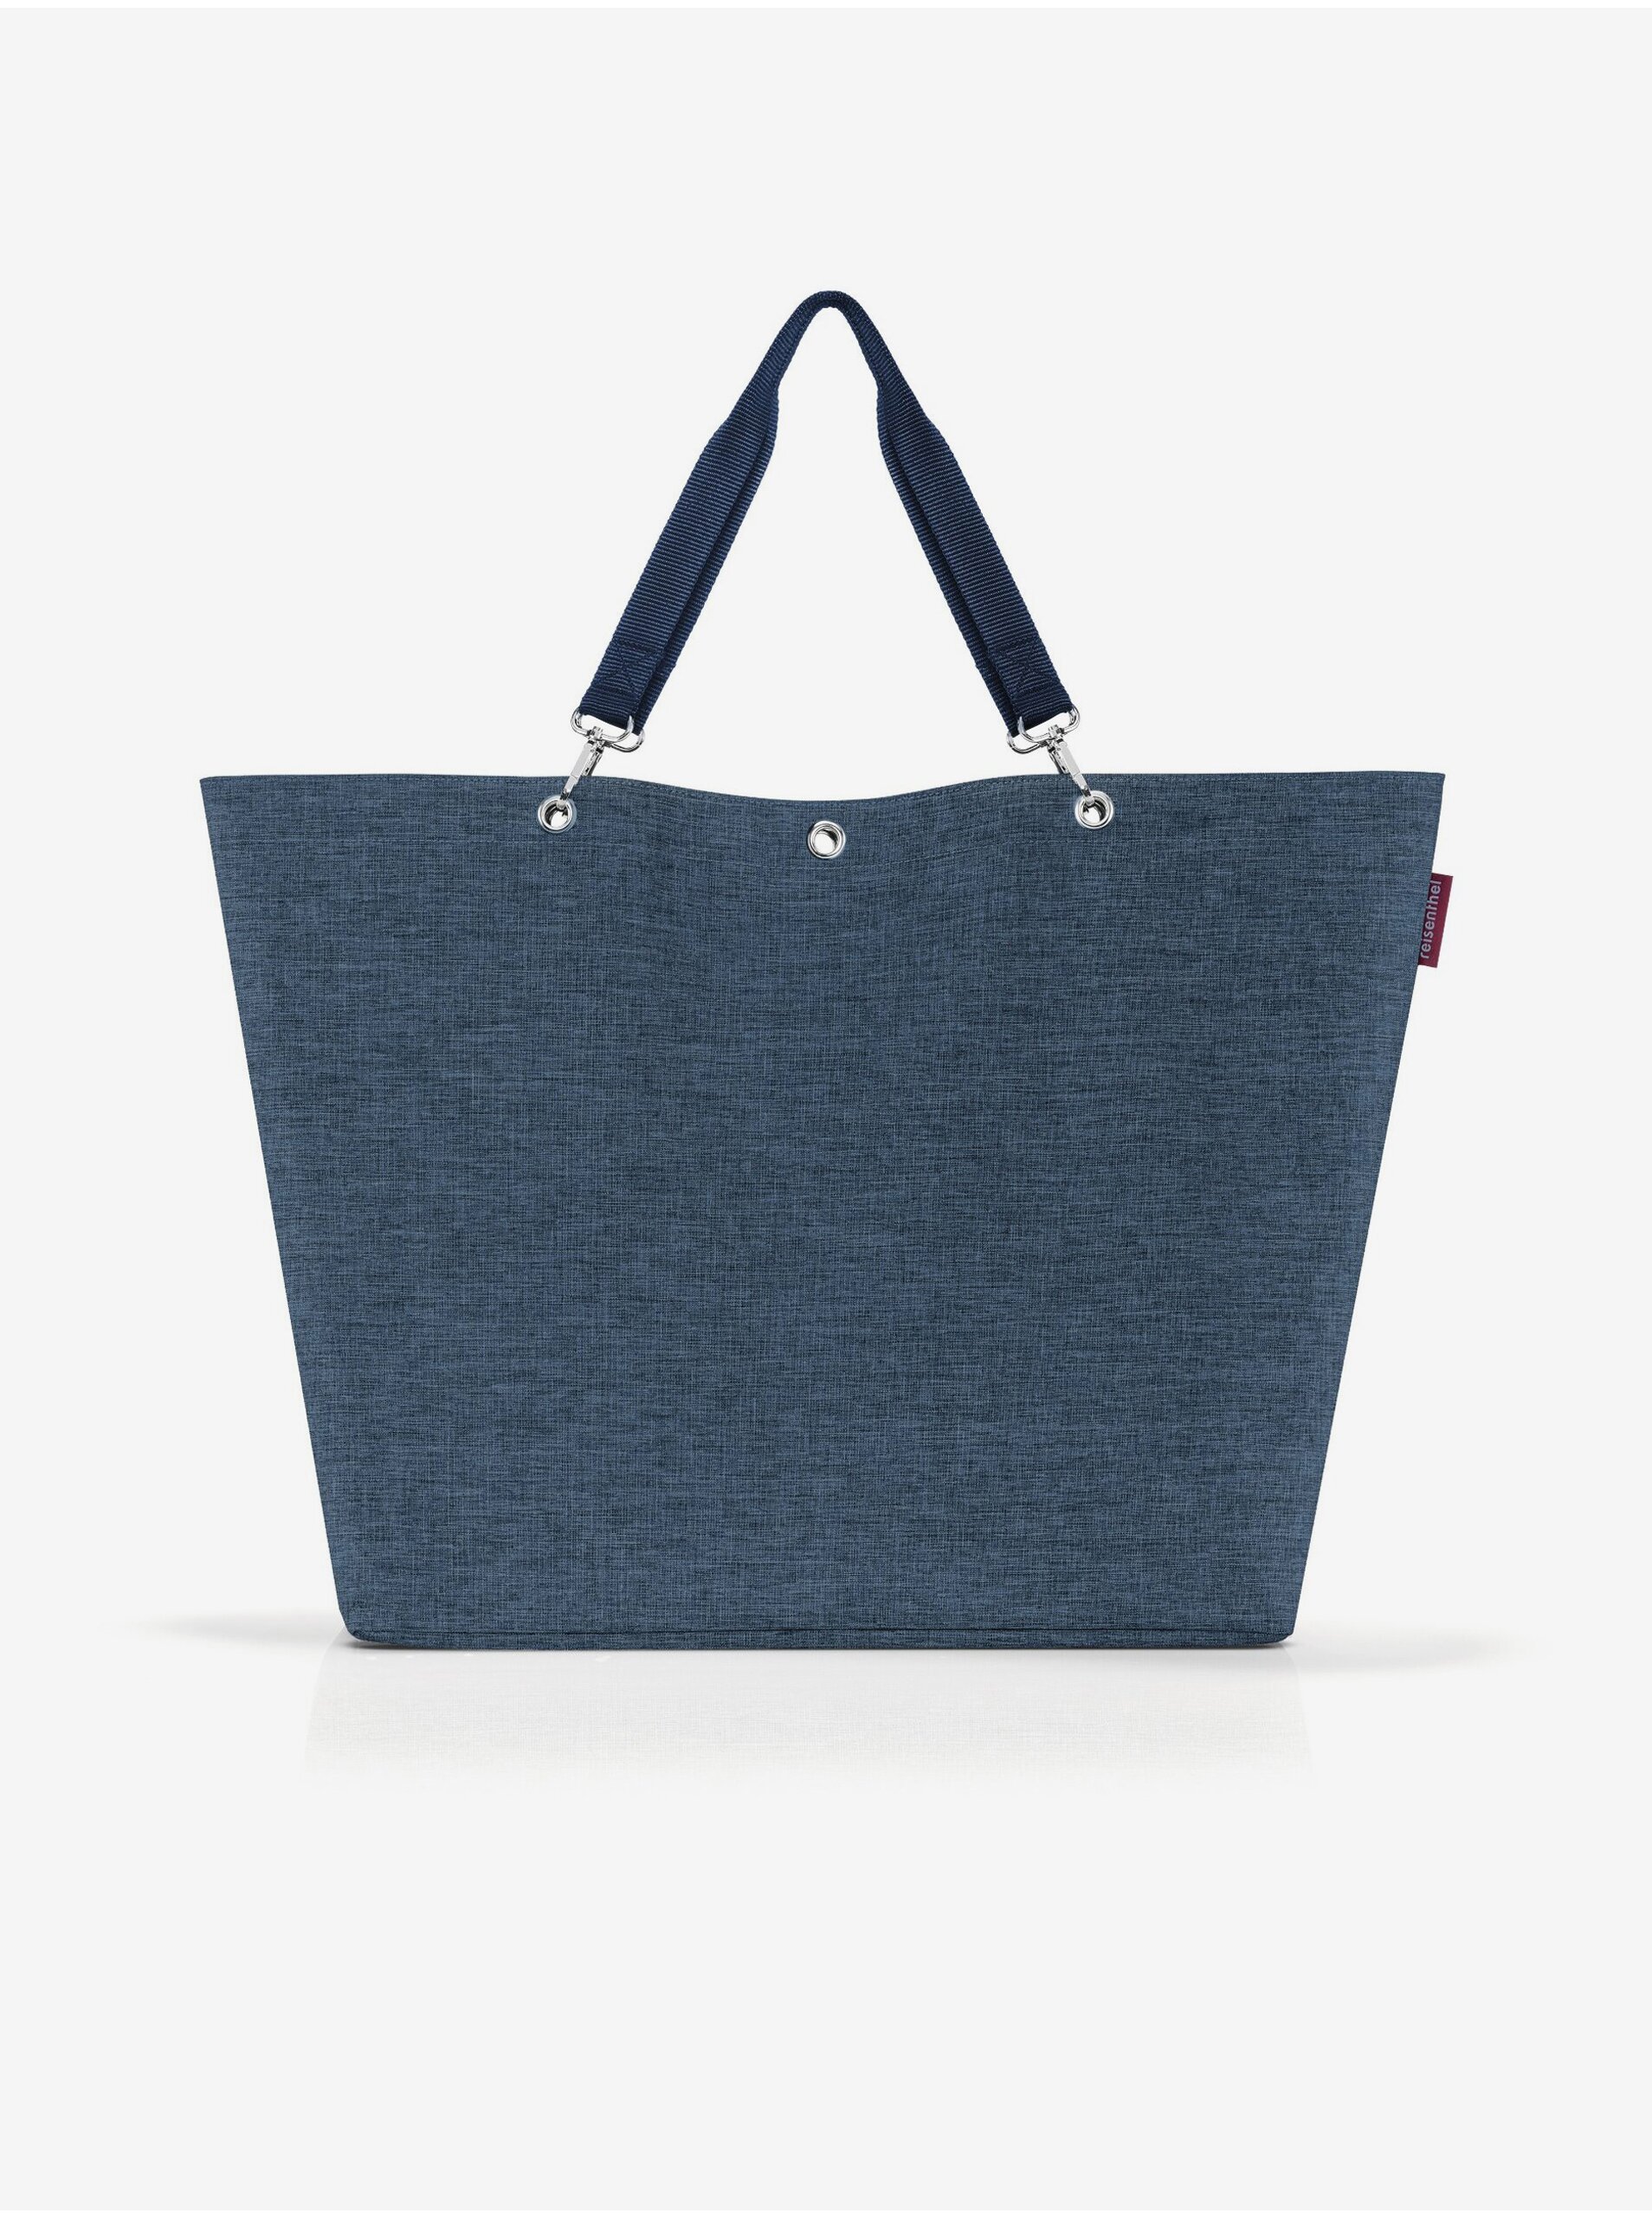 Lacno Modrá dámska veľká shopper taška Reisenthel Shopper XL